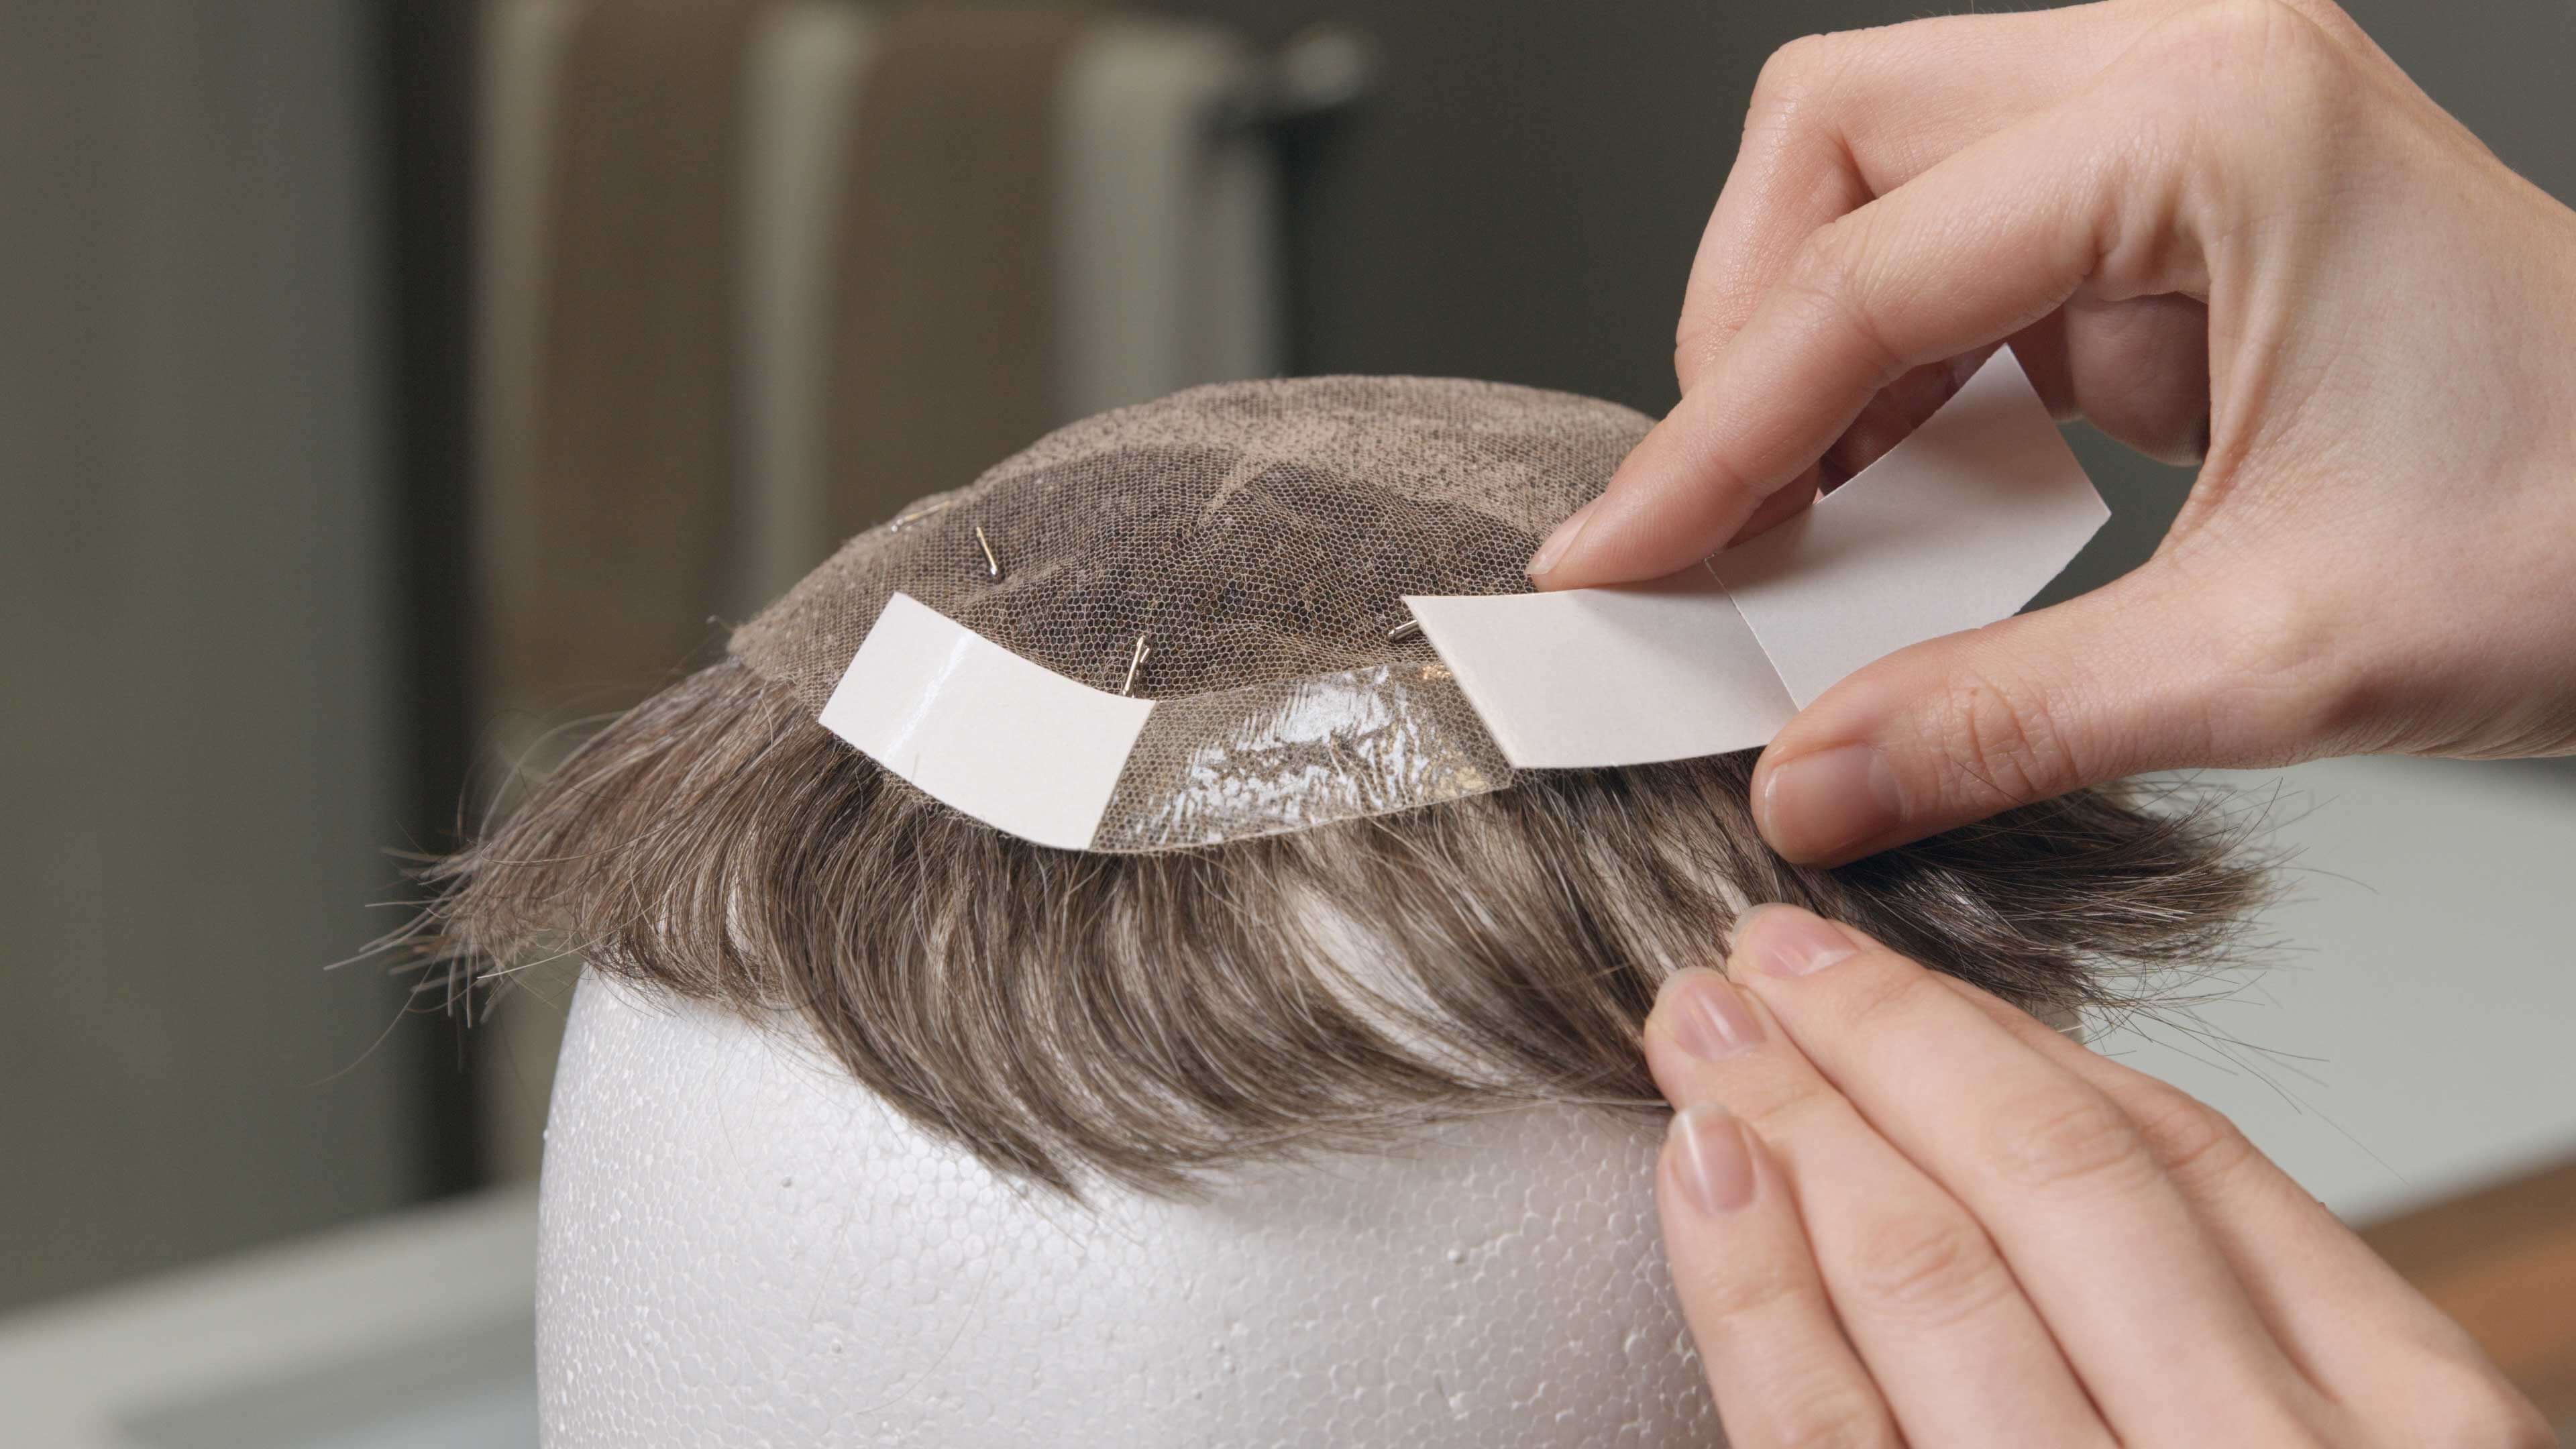 Protez Saç Uygulaması 4. Adım | Protez Saç Nasıl Bantlanır?